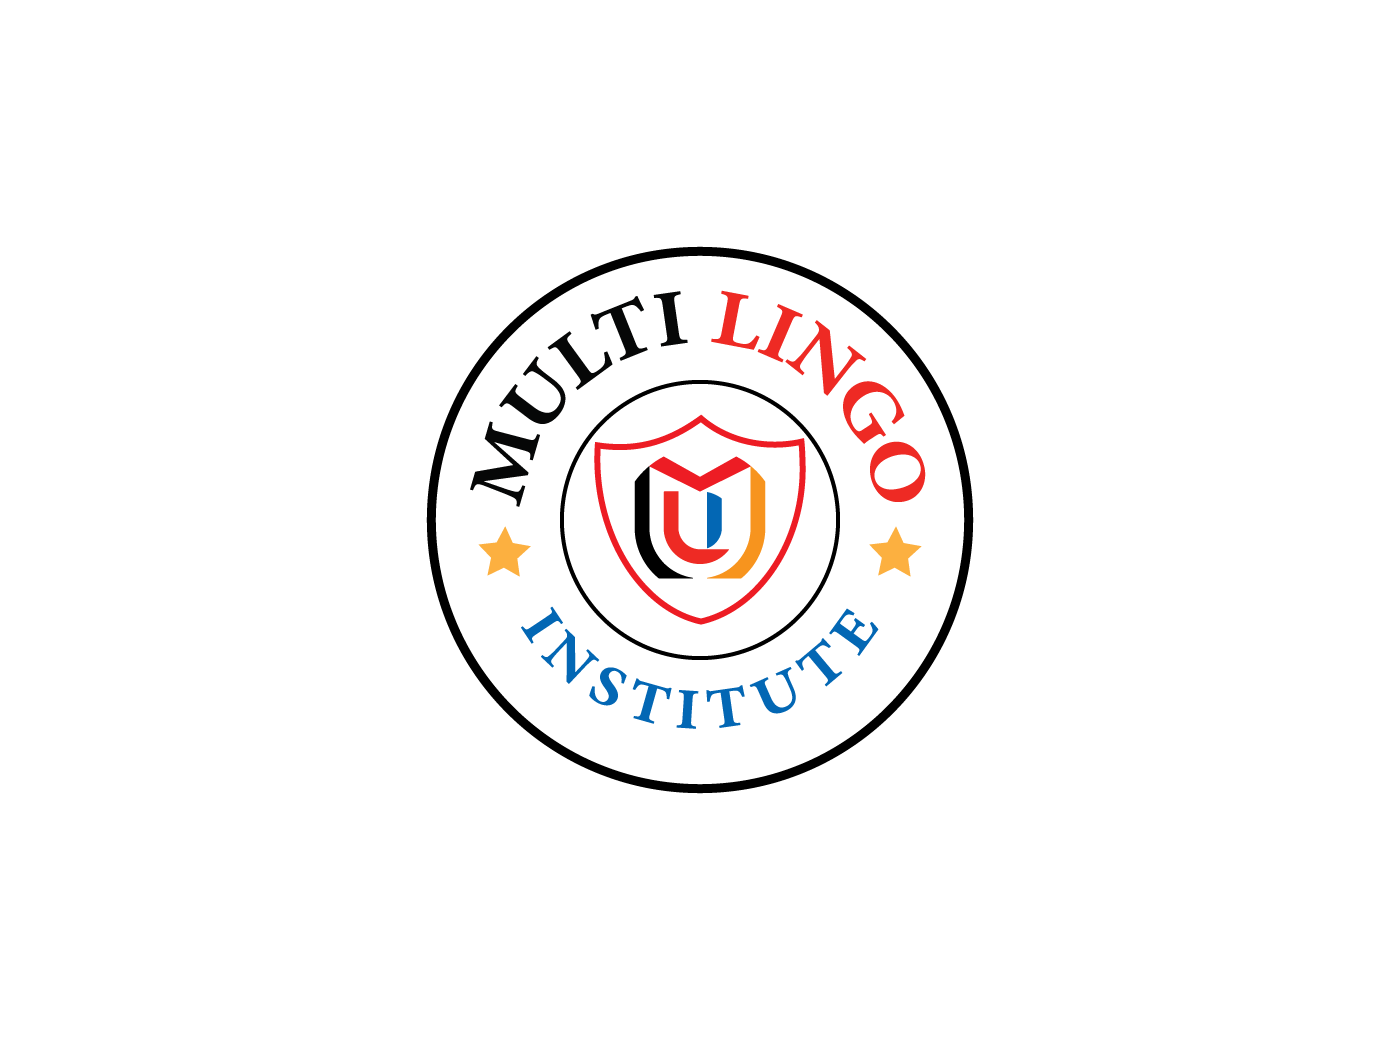 Multi Lingo Institute